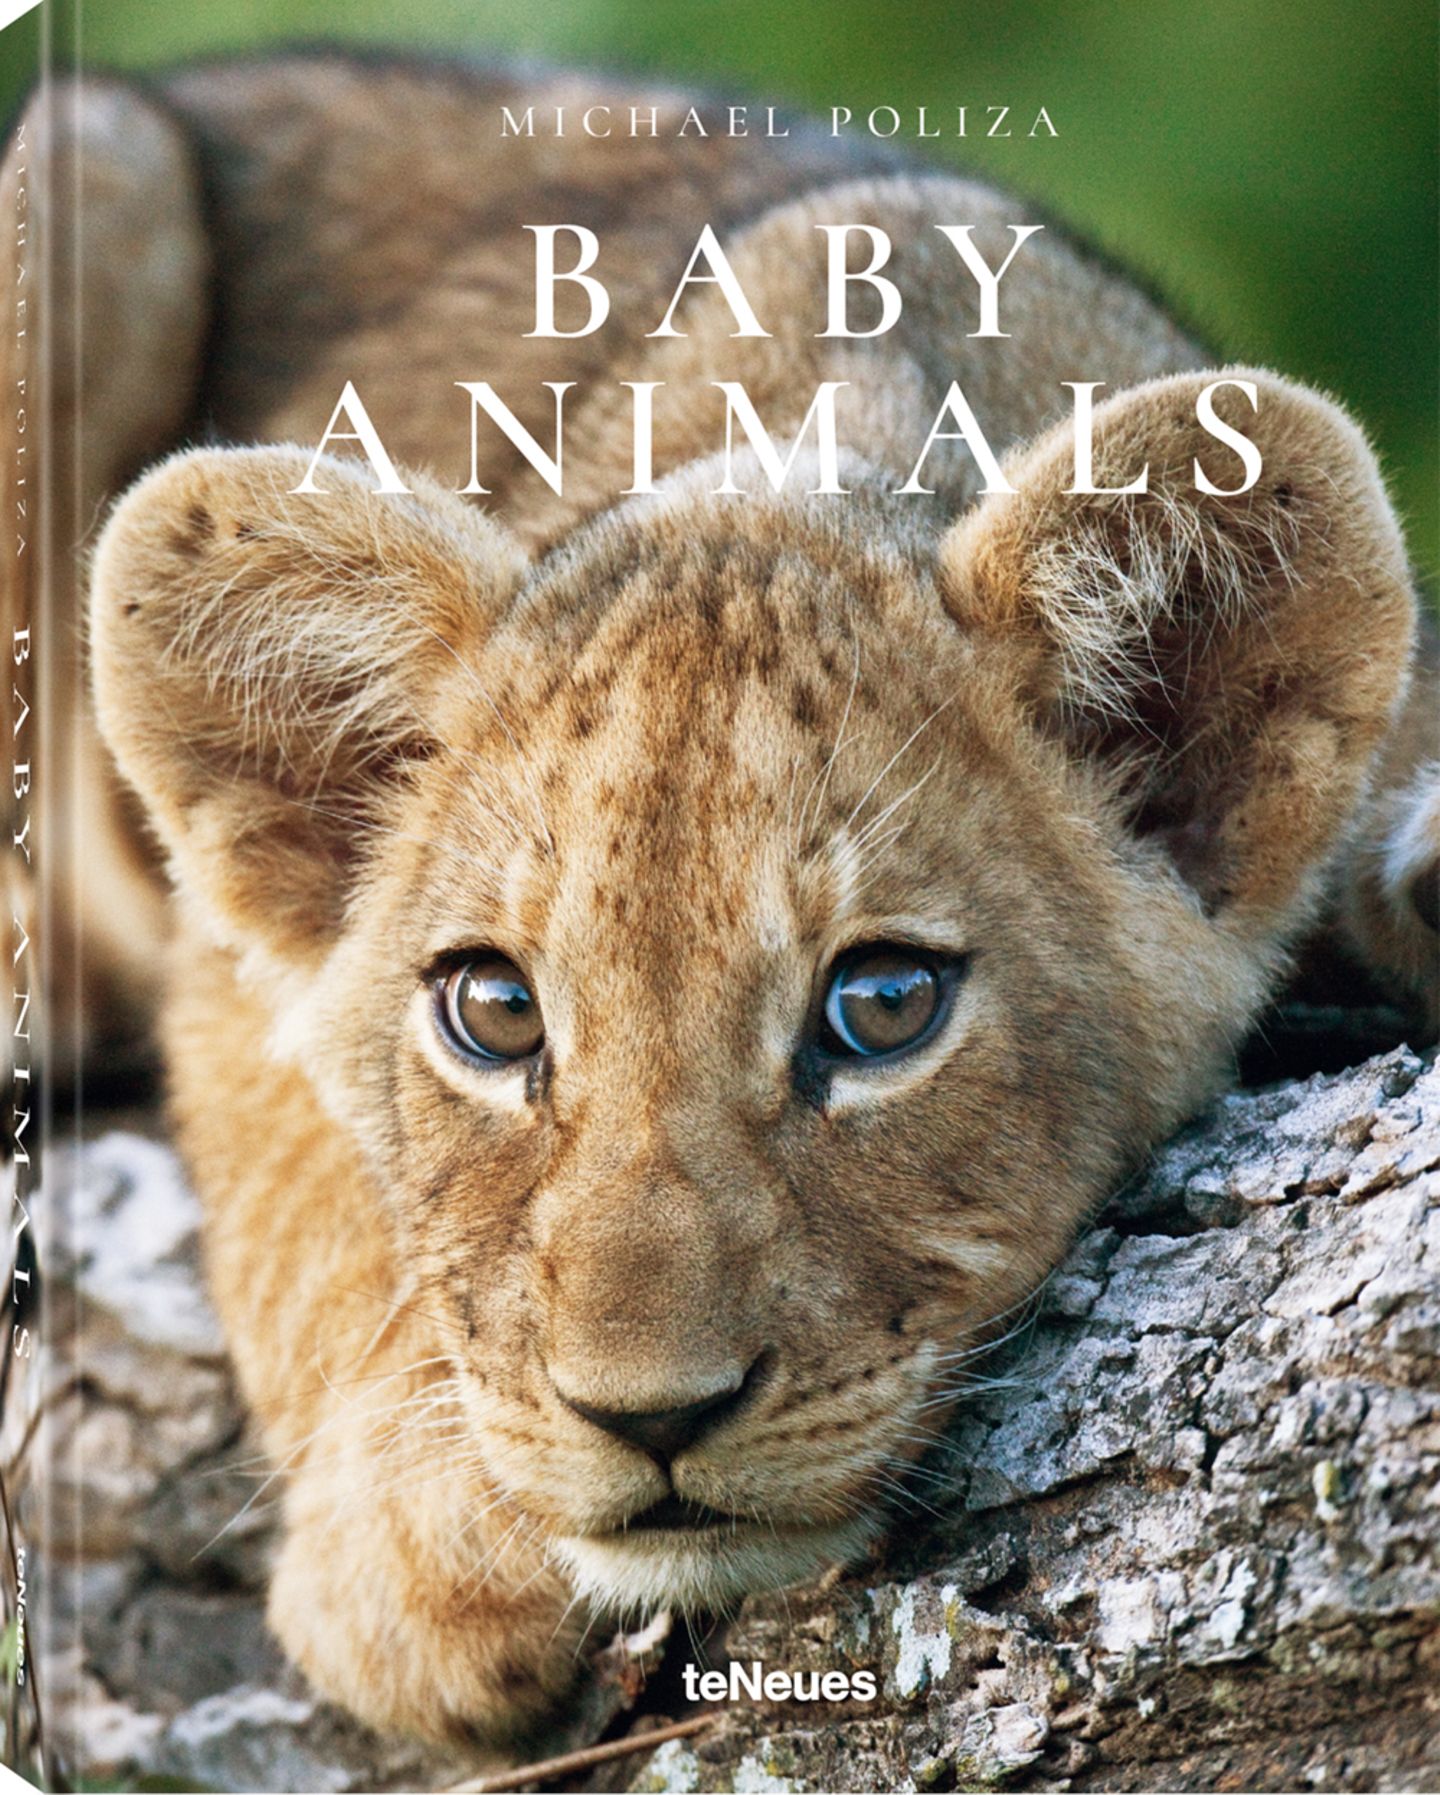 Baby Animals von Michael Poliza, erschienen bei teNeues